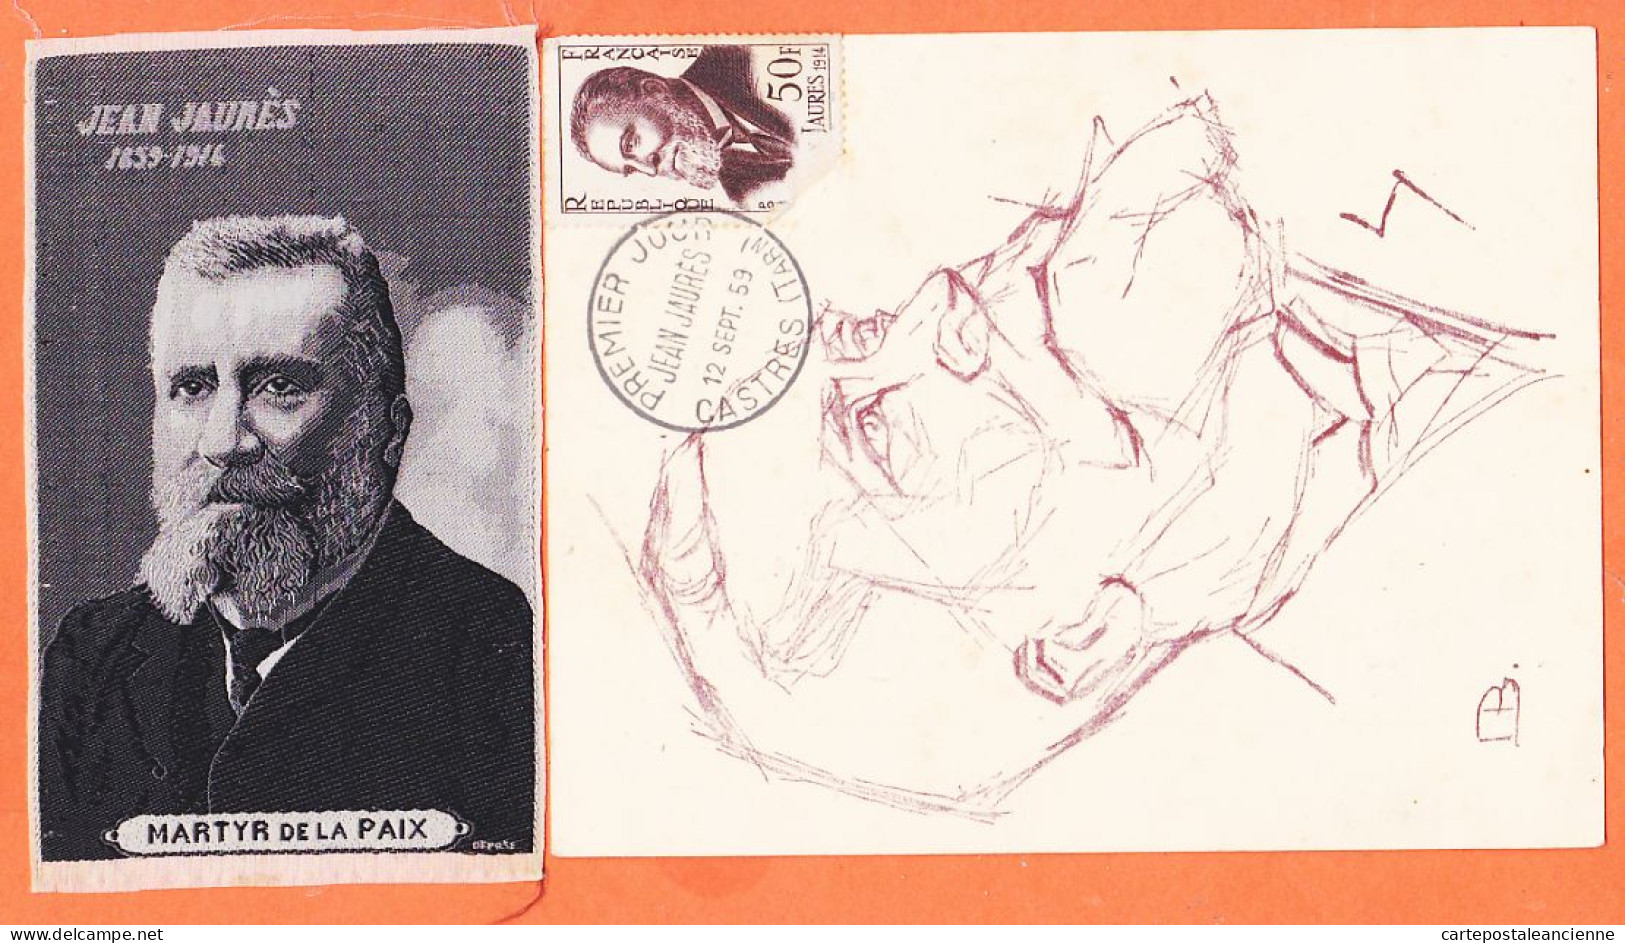 00360 ● JAURES Député SOCIALISTE Assassiné à PARIS 1859-1914 Apôtre PAIX + Portrait Tissé SOIE MARTYR 6,5x11-S.F.IO - Evenementen